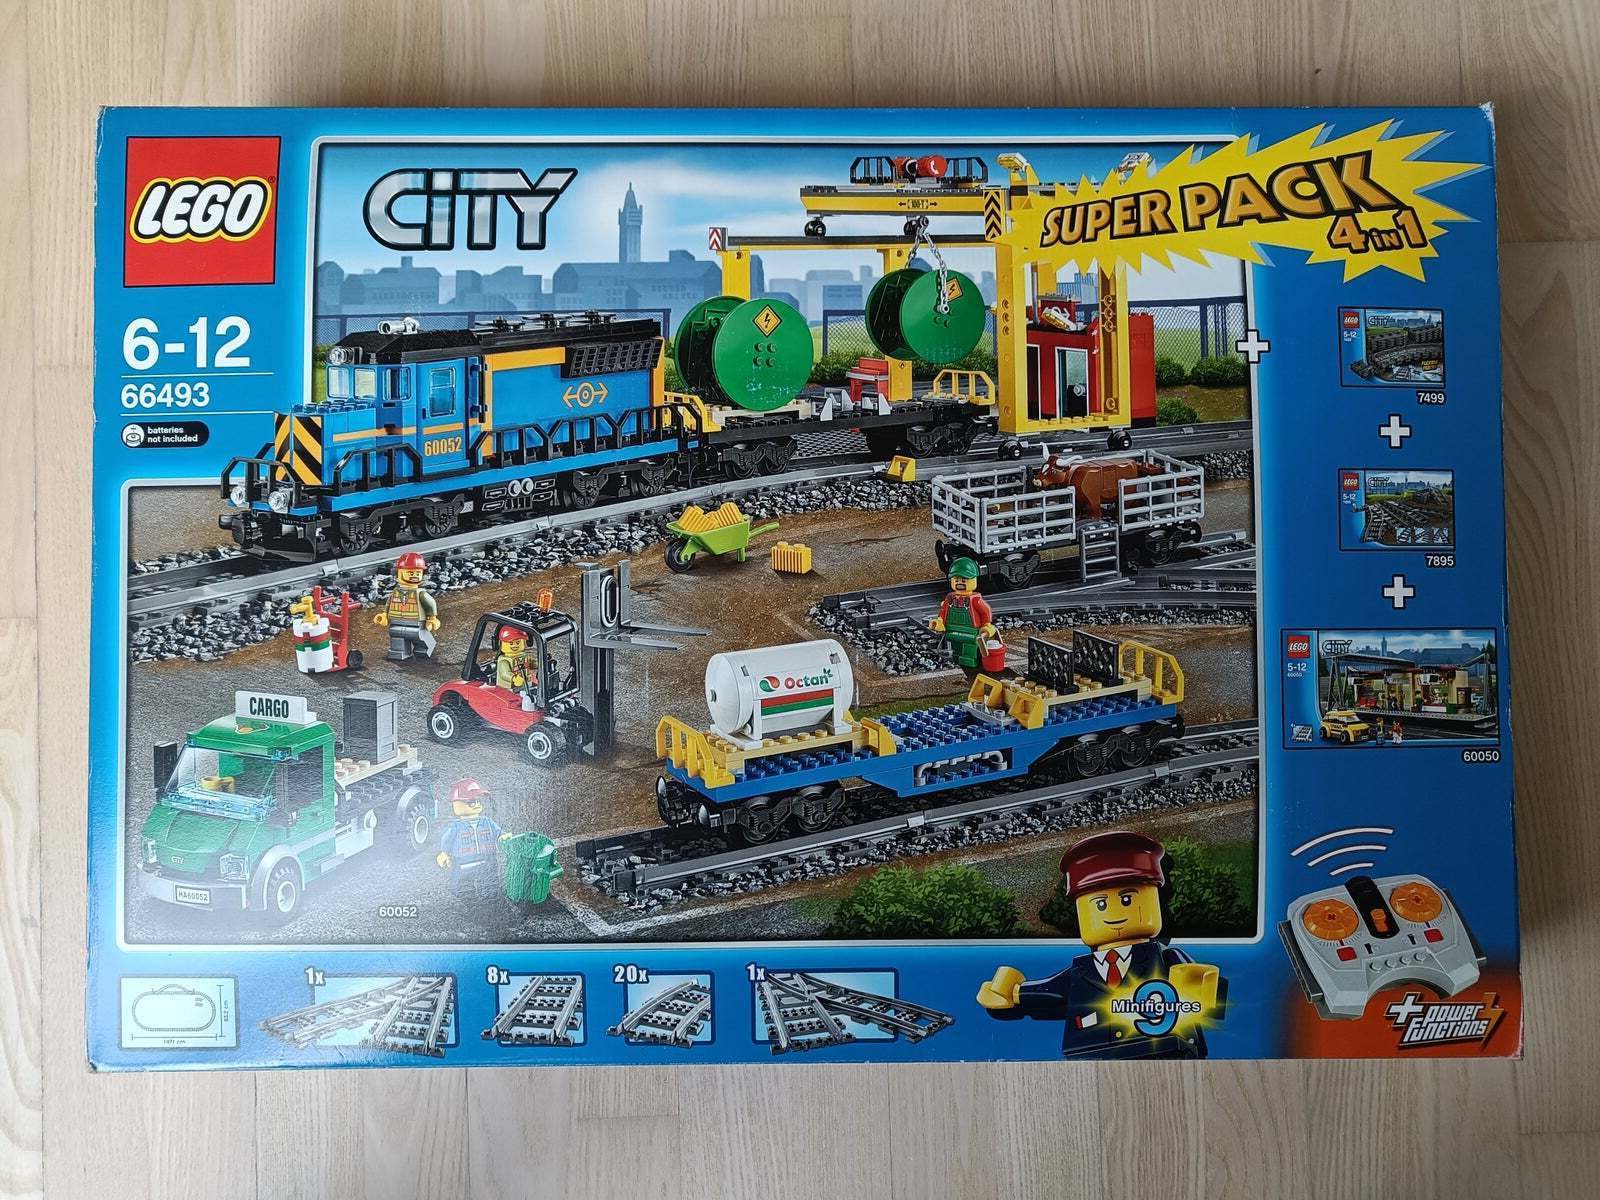 lugtfri vidne forståelse Lego City, 66493 - dba.dk - Køb og Salg af Nyt og Brugt